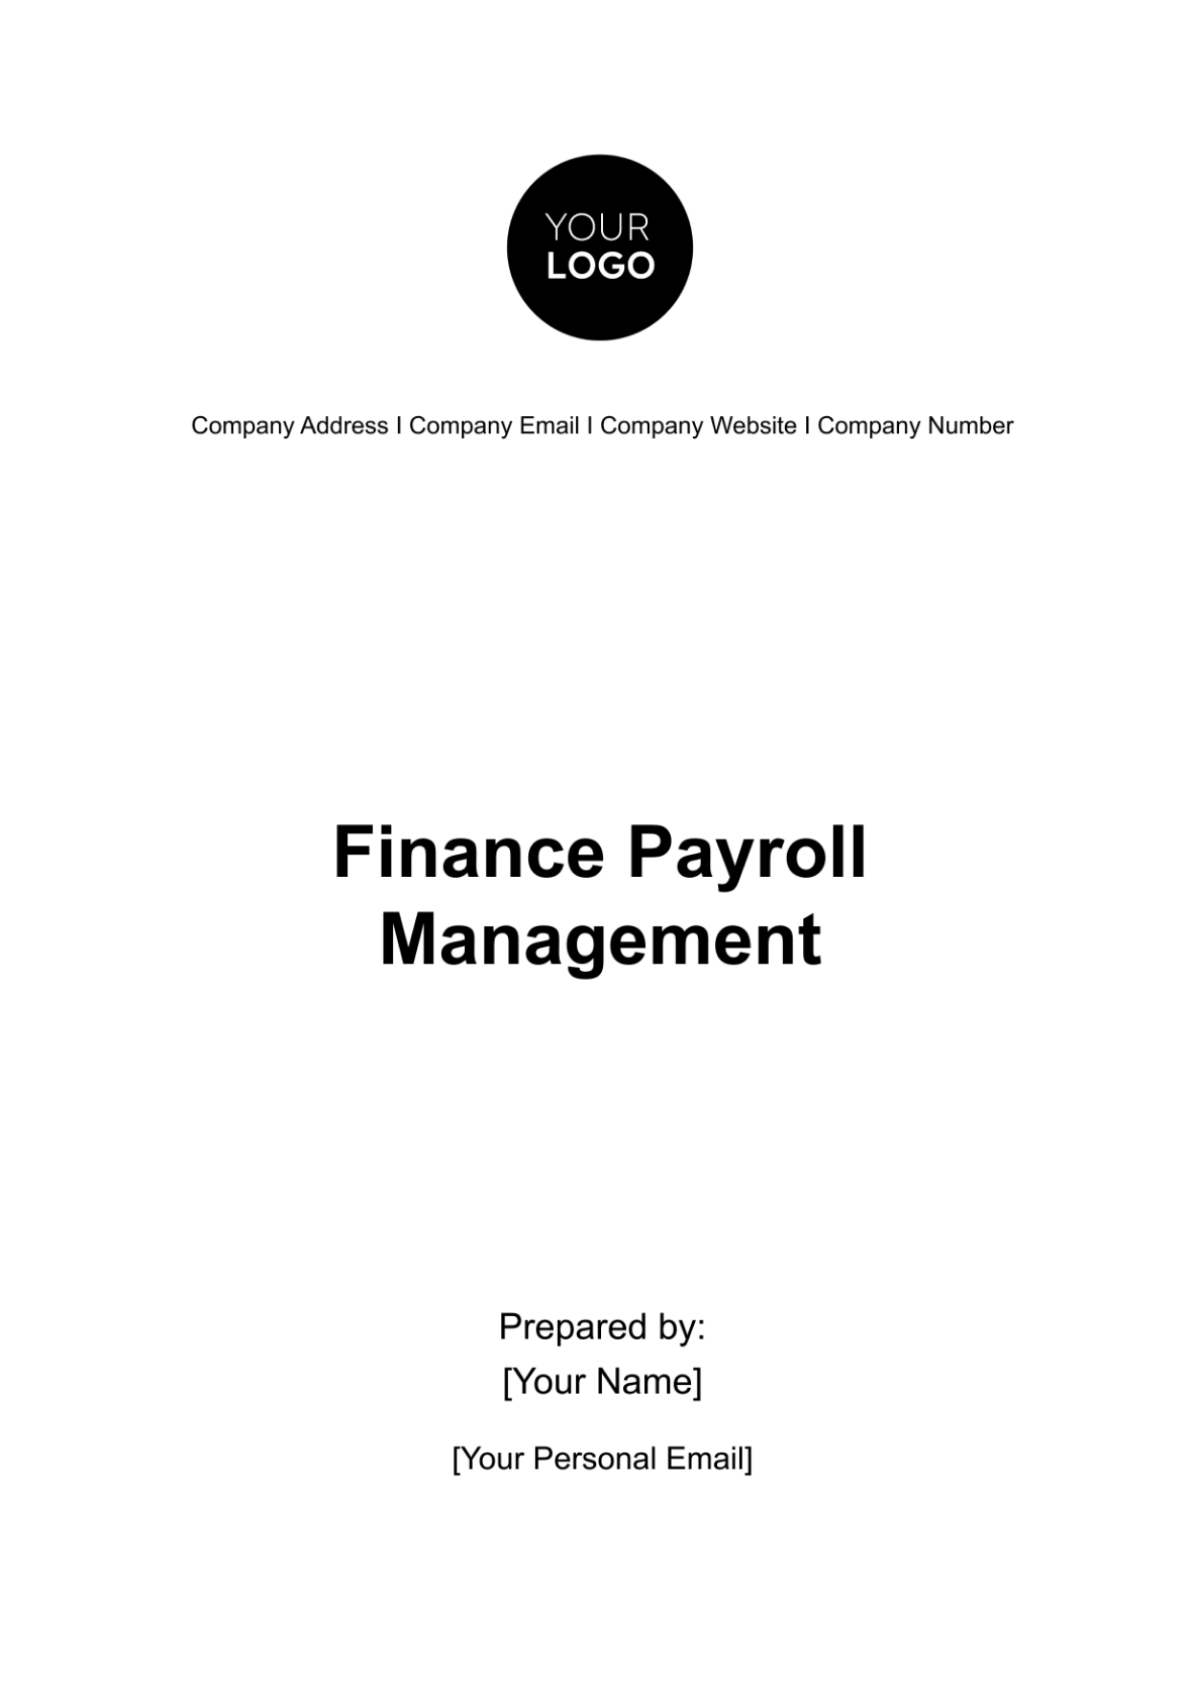 Finance Payroll Management Template